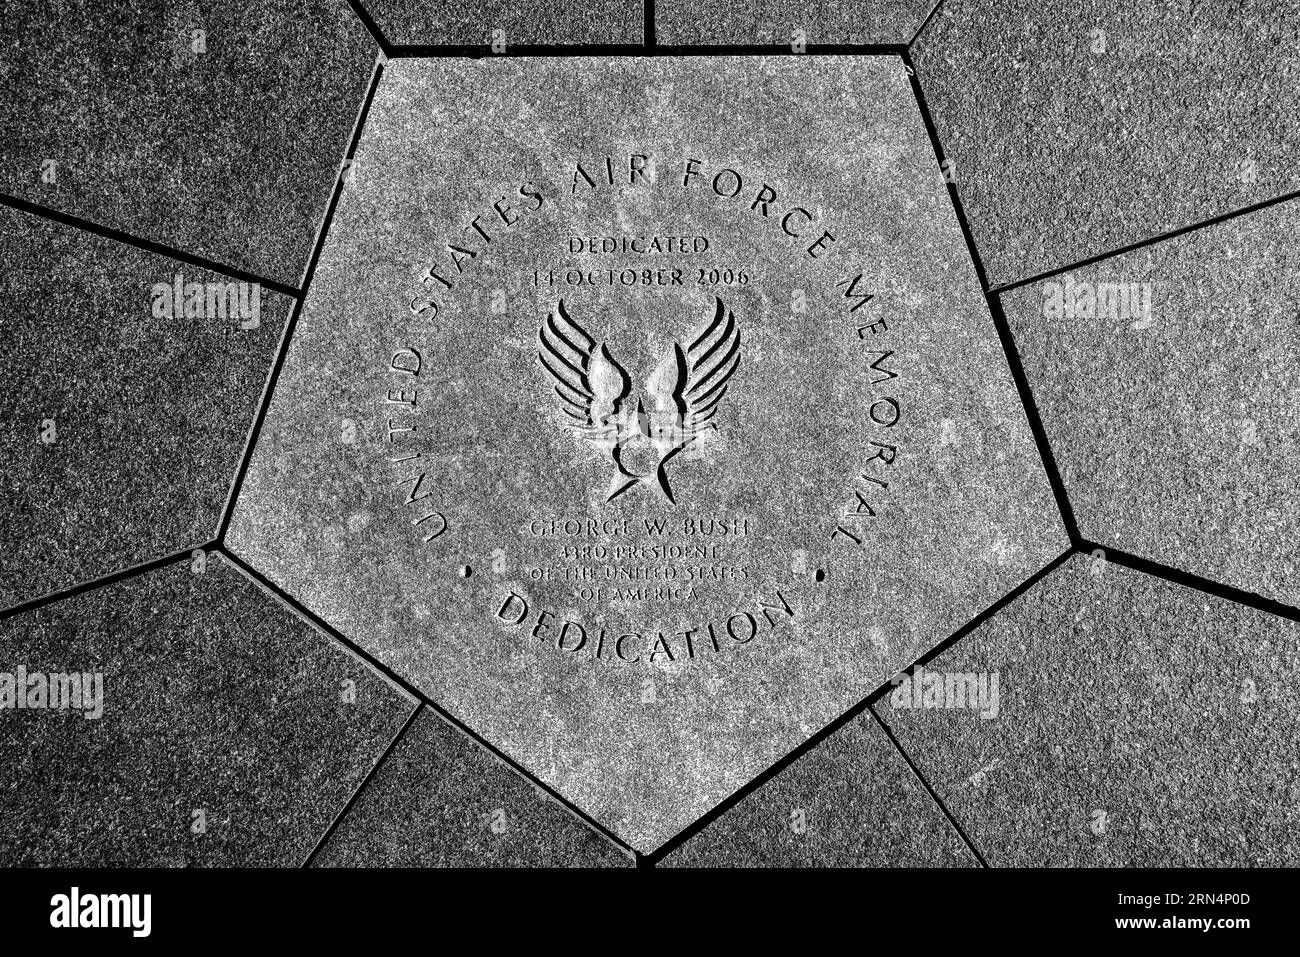 ARLINGTON, VA - Una pietra di fondazione nel centro del Memoriale dell'aeronautica degli Stati Uniti. Si riferisce alla dedizione del memoriale da parte del presidente George W. Bush il 14 ottobre 2006. Situato ad Arlington, Virginia, vicino al Pentagono e attraverso il fiume Potomac da Washington DC, il Memoriale dell'aeronautica degli Stati Uniti onora il servizio del personale dell'aeronautica degli Stati Uniti e delle sue organizzazioni del patrimonio. Il pezzo centrale del memoriale è una serie di tre guglie in acciaio che torreggiano oltre 200 metri sopra i dintorni. Sono stati progettati per evocare l'immagine dei 'contrasti dell'Air Force Thunderbirds AS Foto Stock